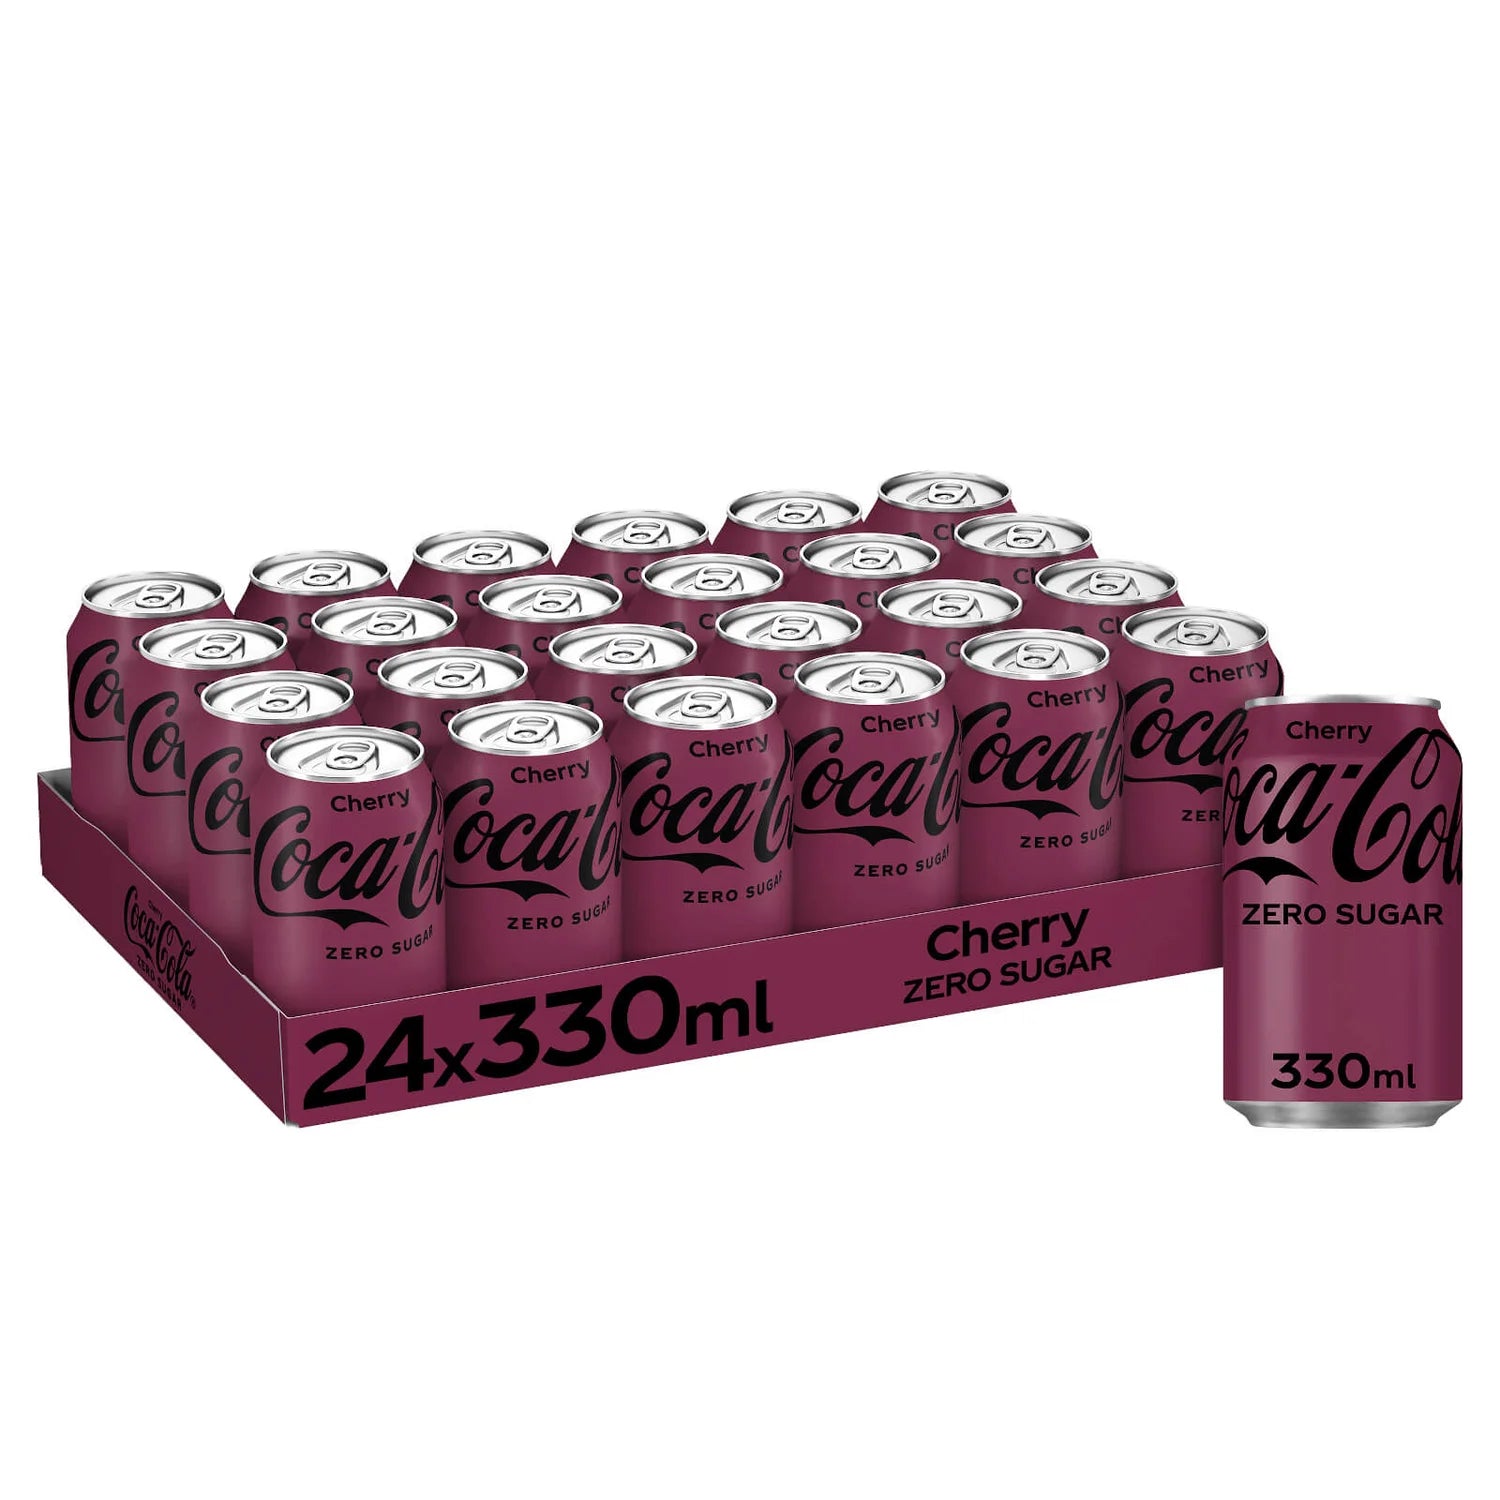 Coca-Cola Zero Sugar Cherry - 330ml - Case of 24